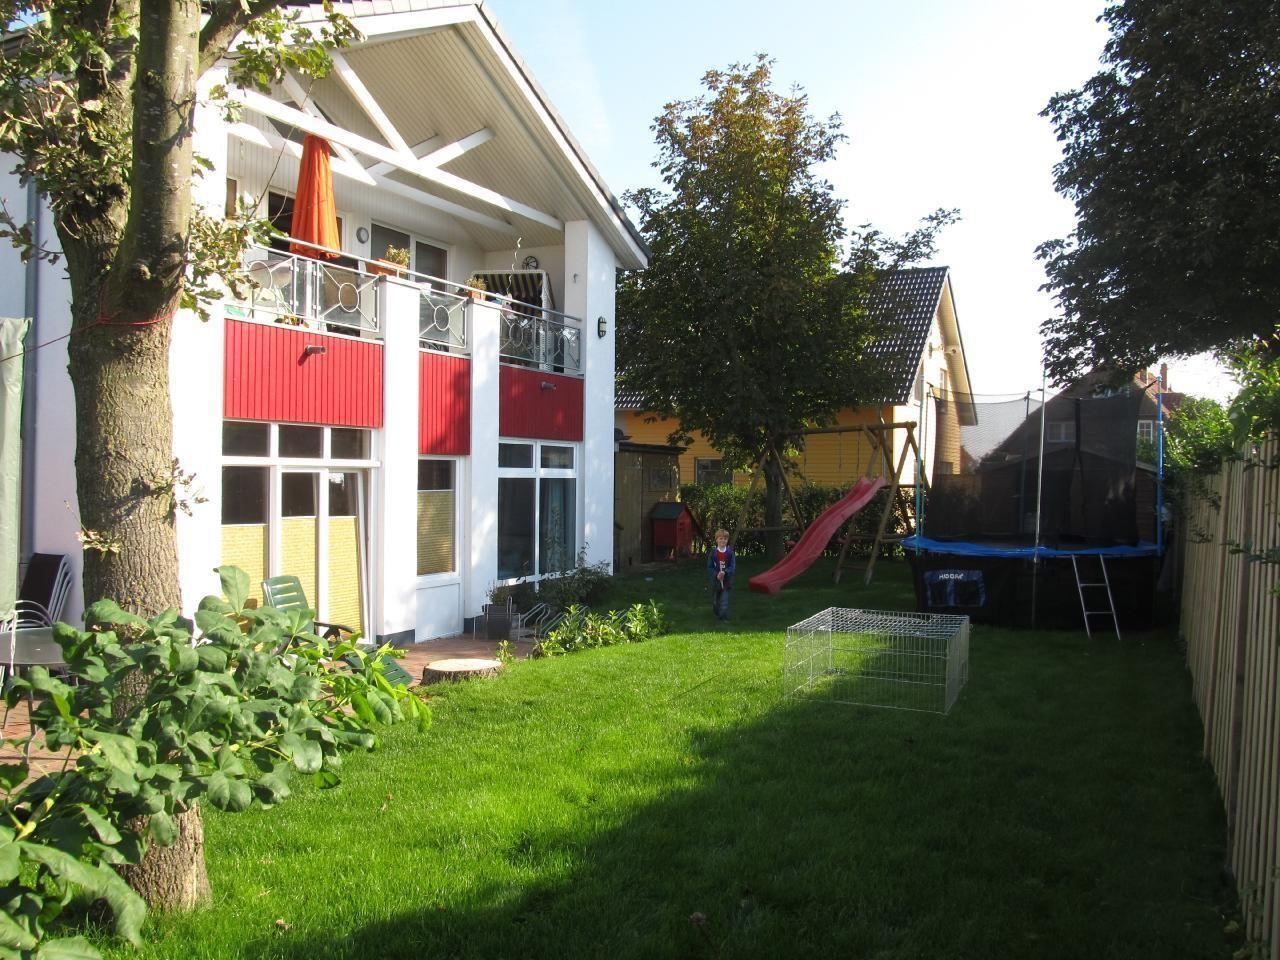 Appartement in Wulfen mit Garten, Grill und Terras   Ostseeinseln